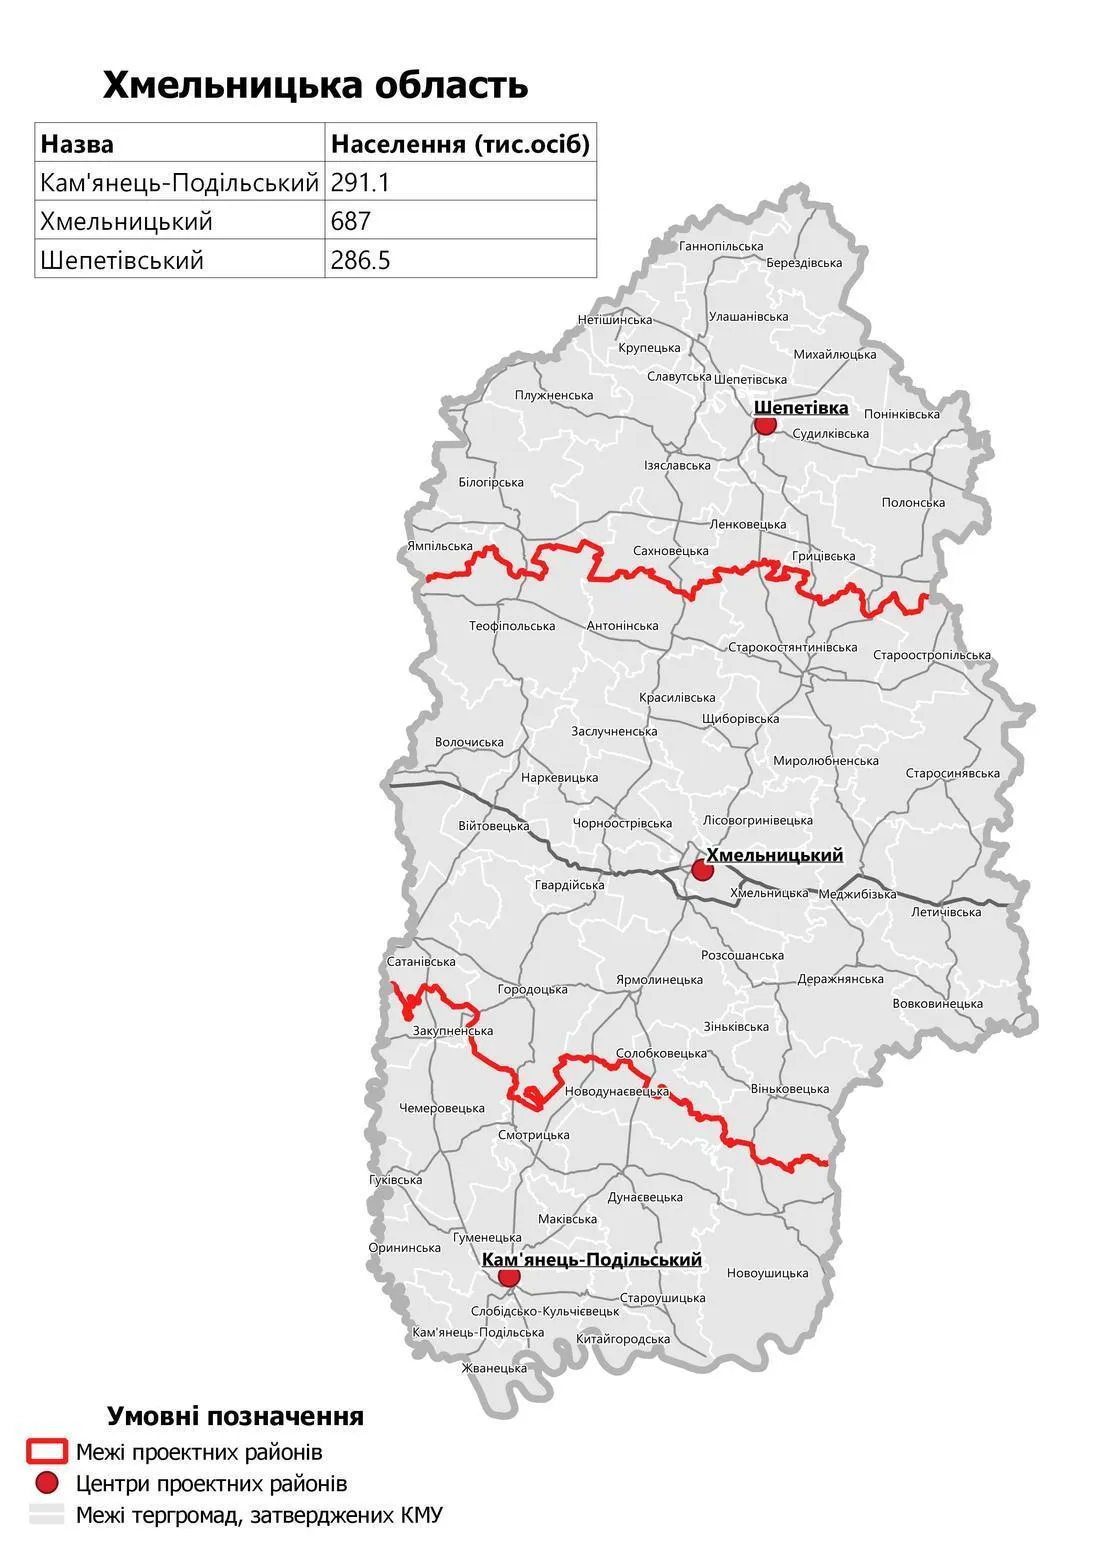 Нові райони, новий адміністративний поділ, Хмельниччина, Хмельницька область 